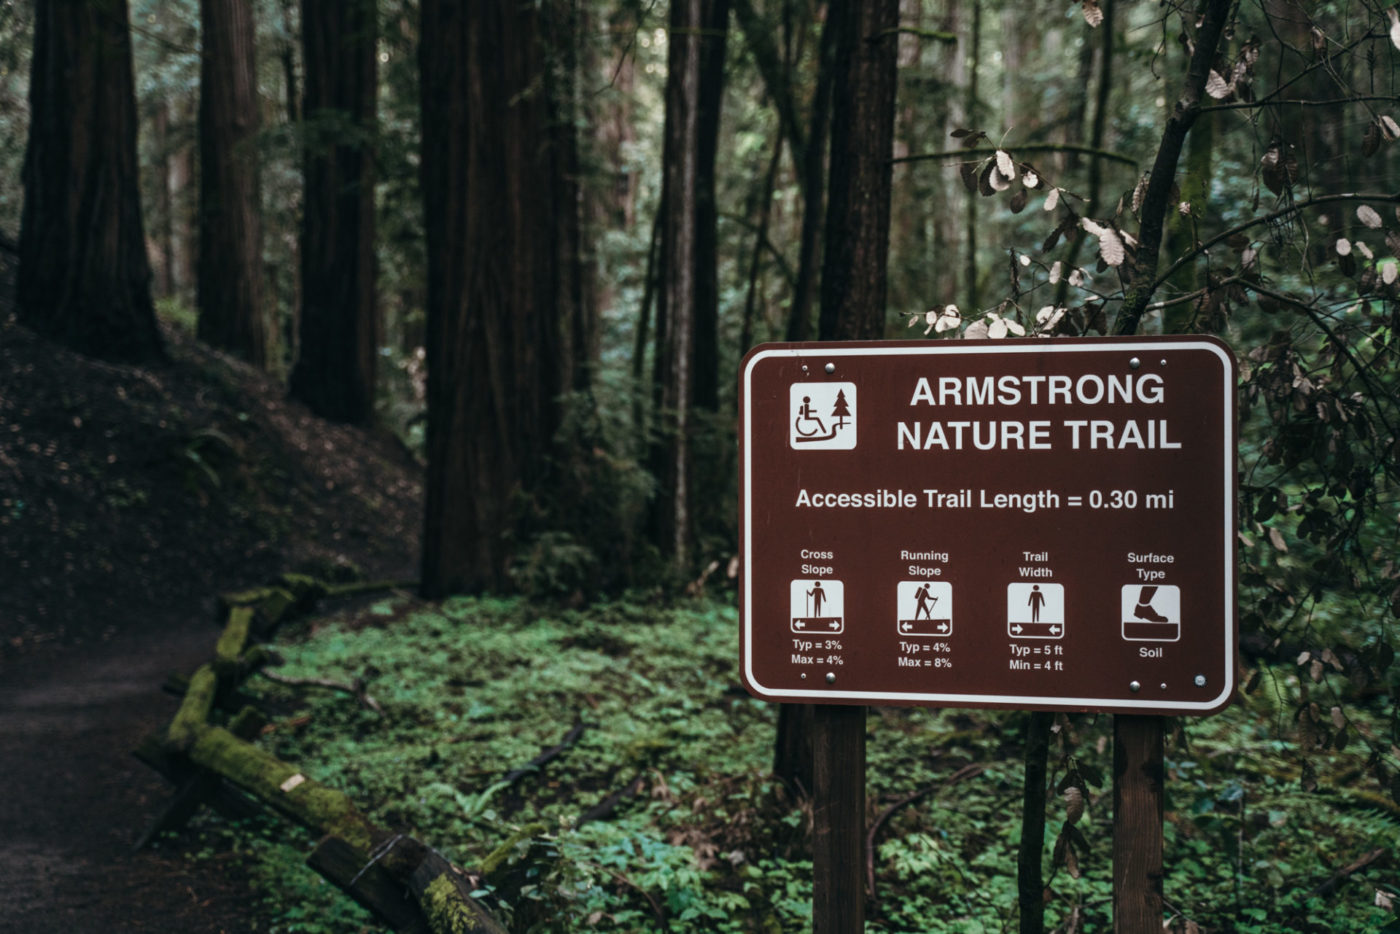 阿姆斯壮自然步道位于阿姆斯壮红杉保护区